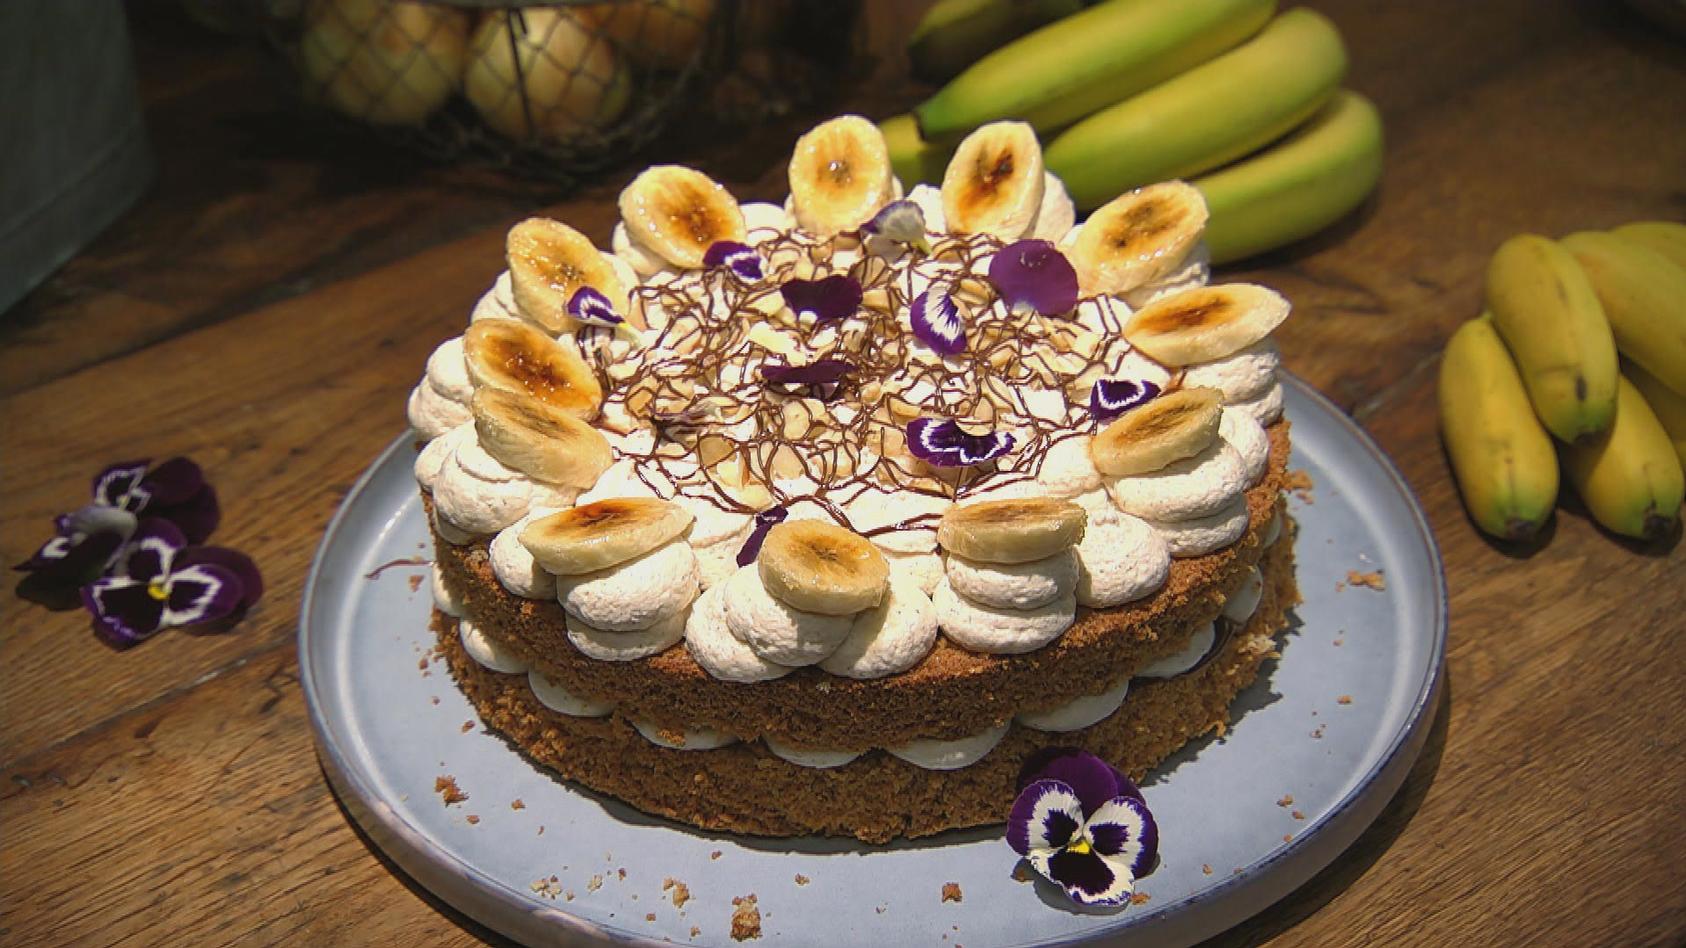 Nuss-Bananen-Torte: das Dessert von Andrea Schirmaier-Huber und Ronny Loll